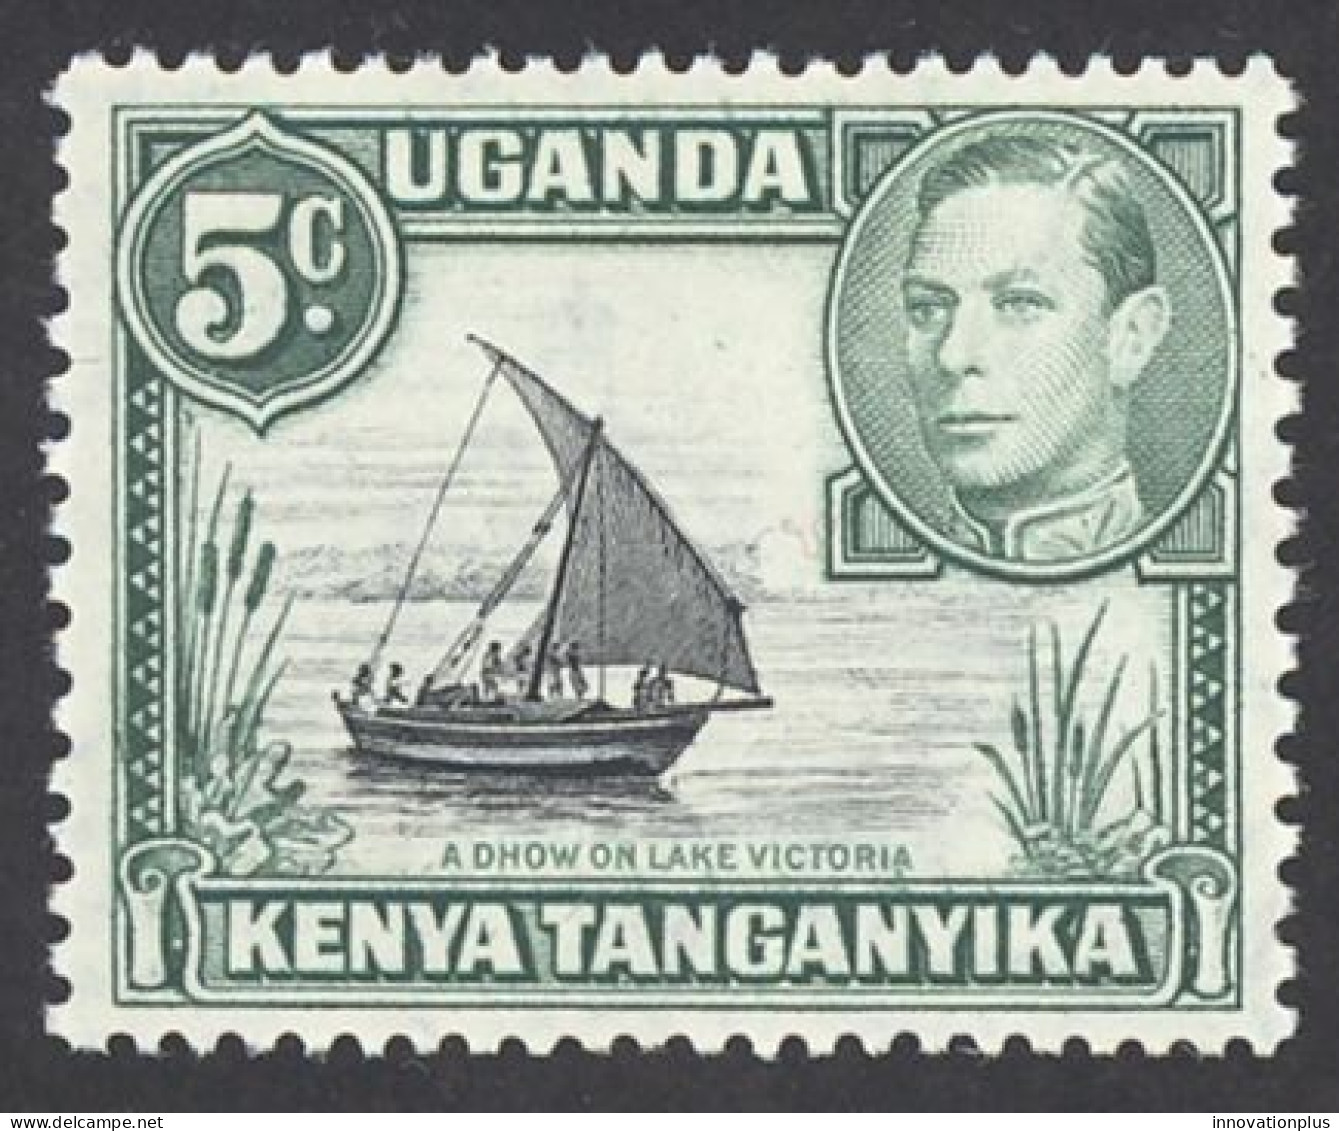 Kenya, Uganda, Tanzania Sc# 67 MNH 1938-1954 5c Green & Black Definitives - Kenya, Uganda & Tanzania